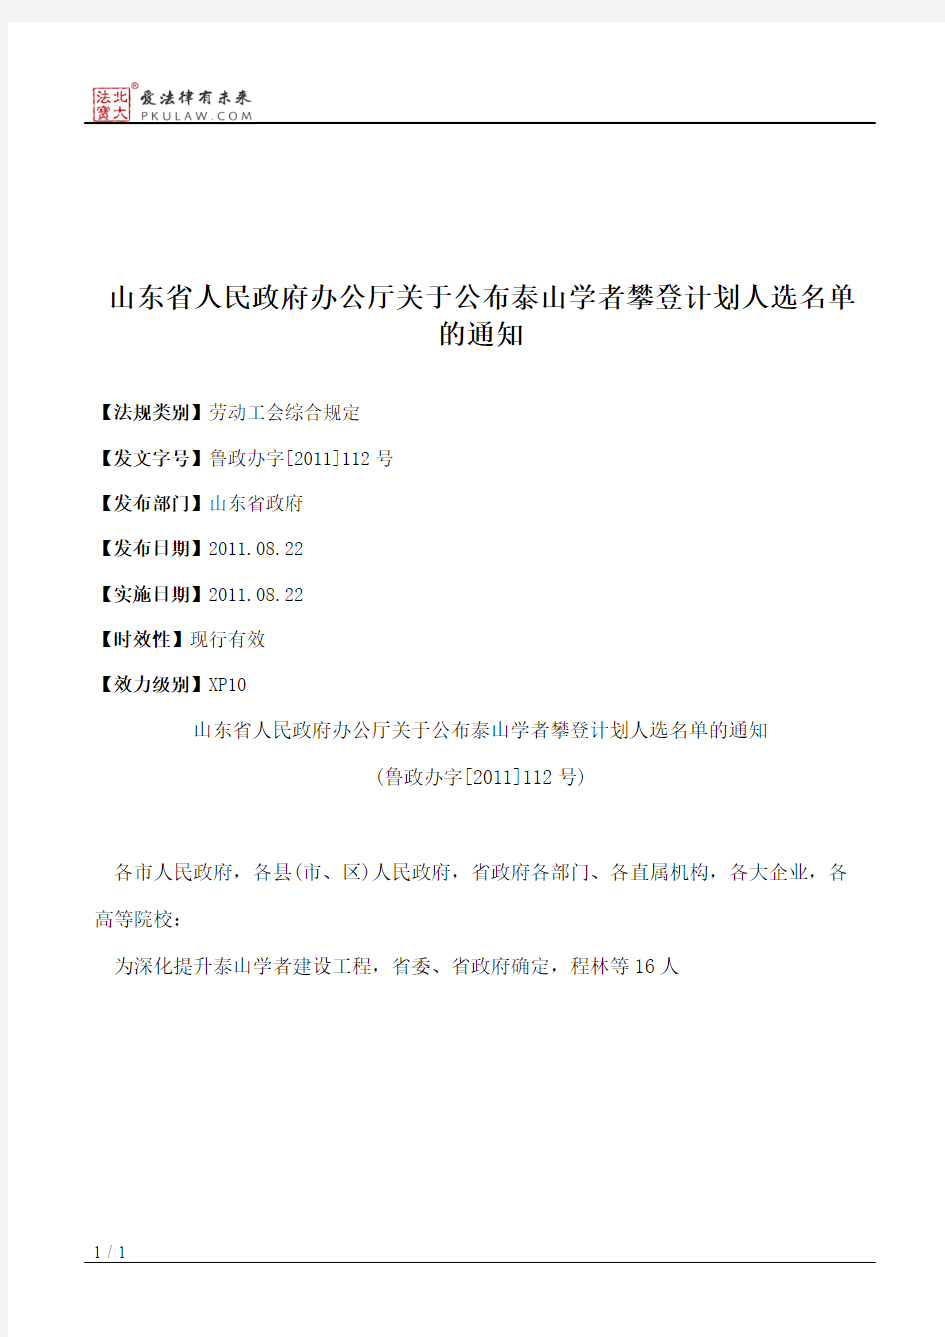 山东省人民政府办公厅关于公布泰山学者攀登计划人选名单的通知